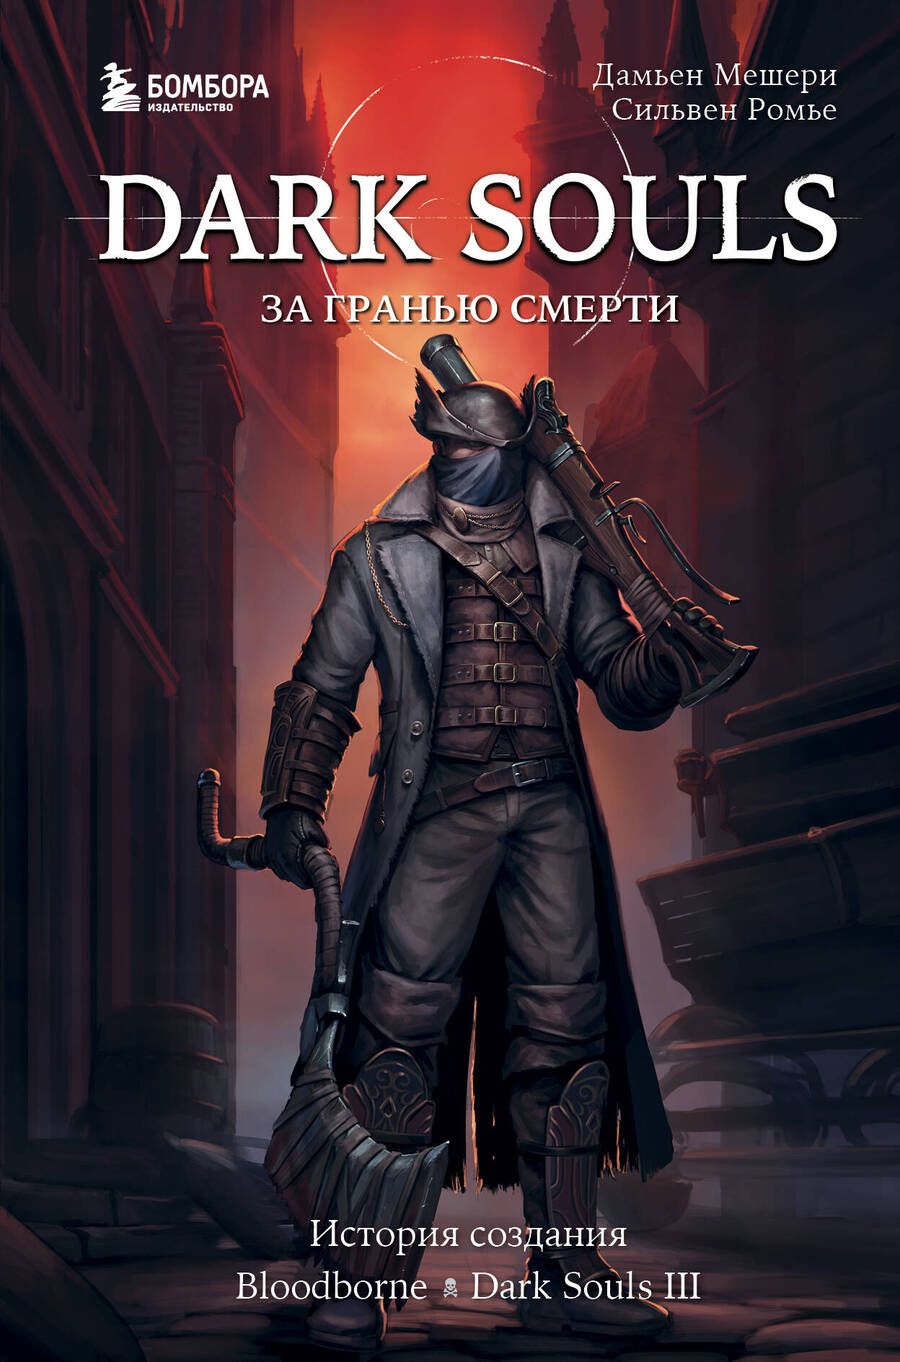 Обложка книги "Мешери, Ромье: Dark Souls. За гранью смерти. Книга 2. История создания Bloodborne, Dark Souls III"